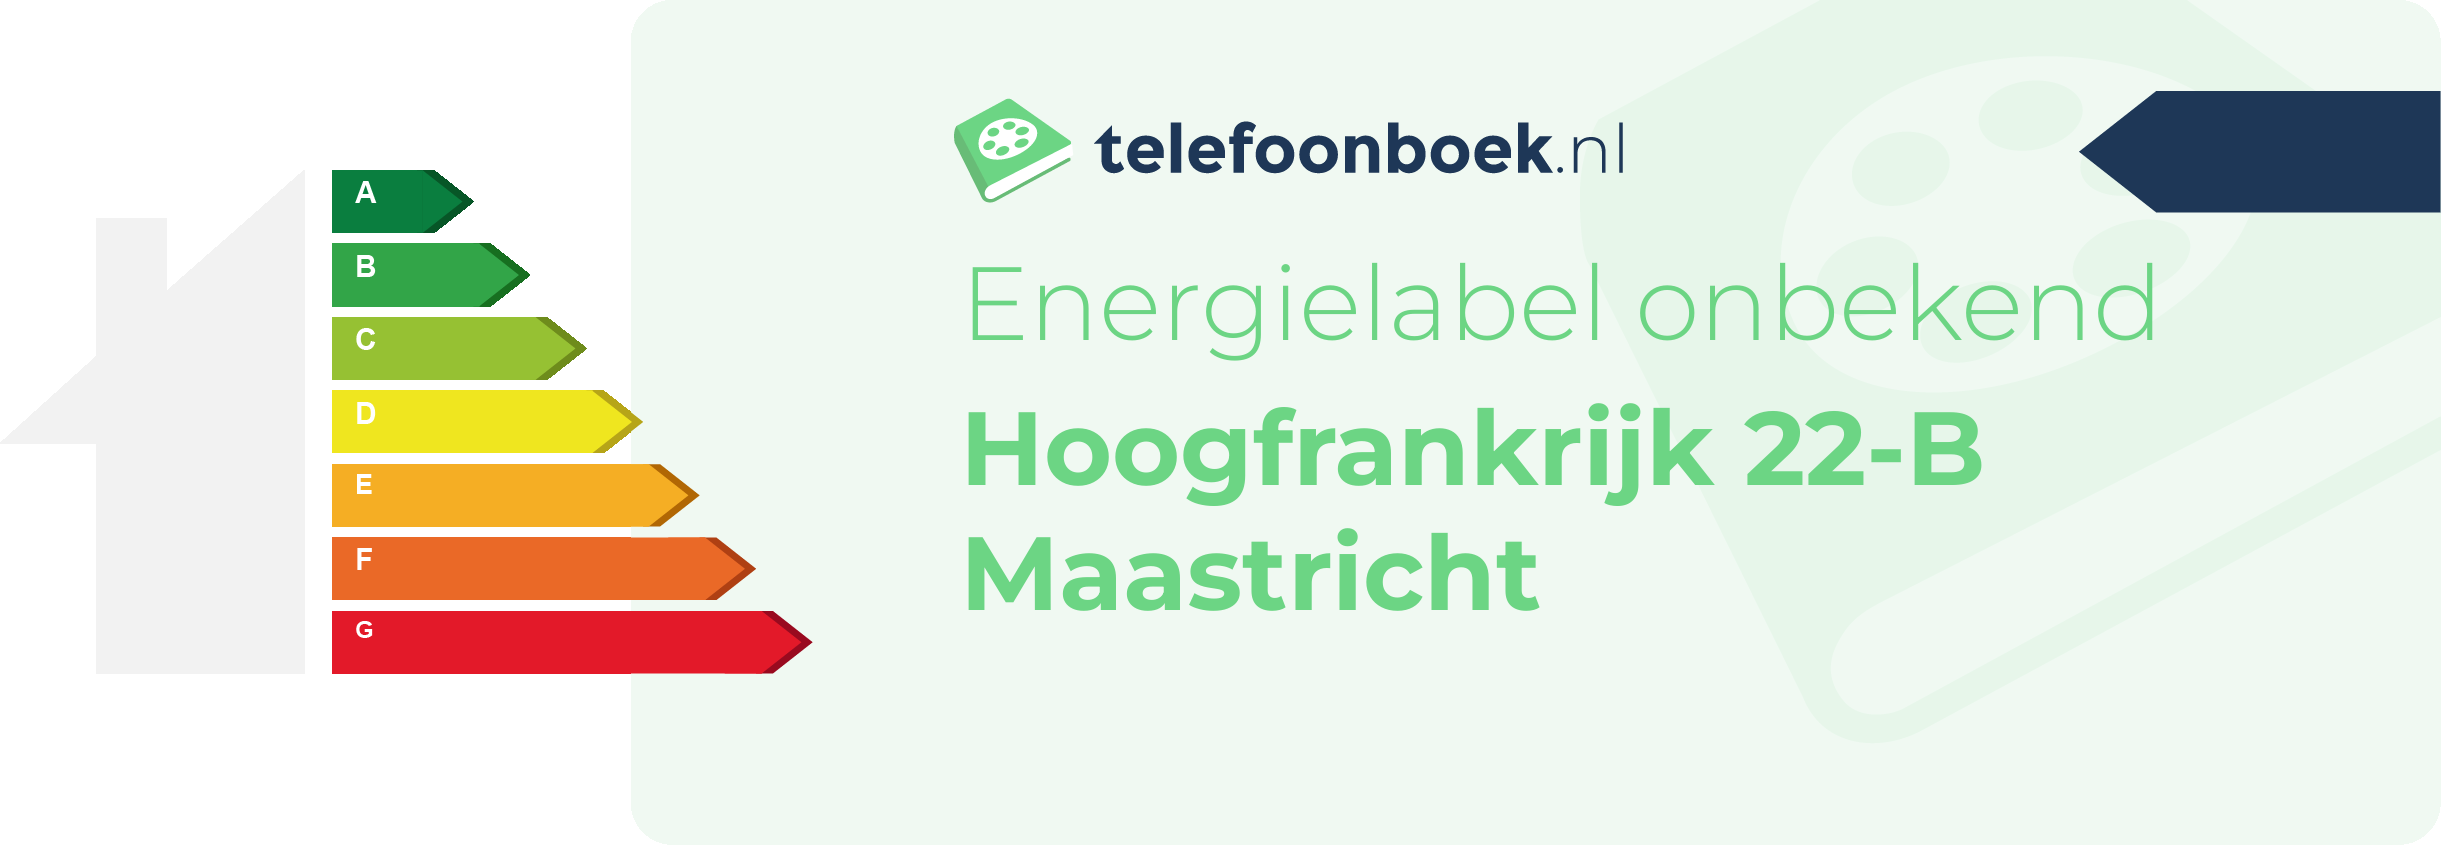 Energielabel Hoogfrankrijk 22-B Maastricht